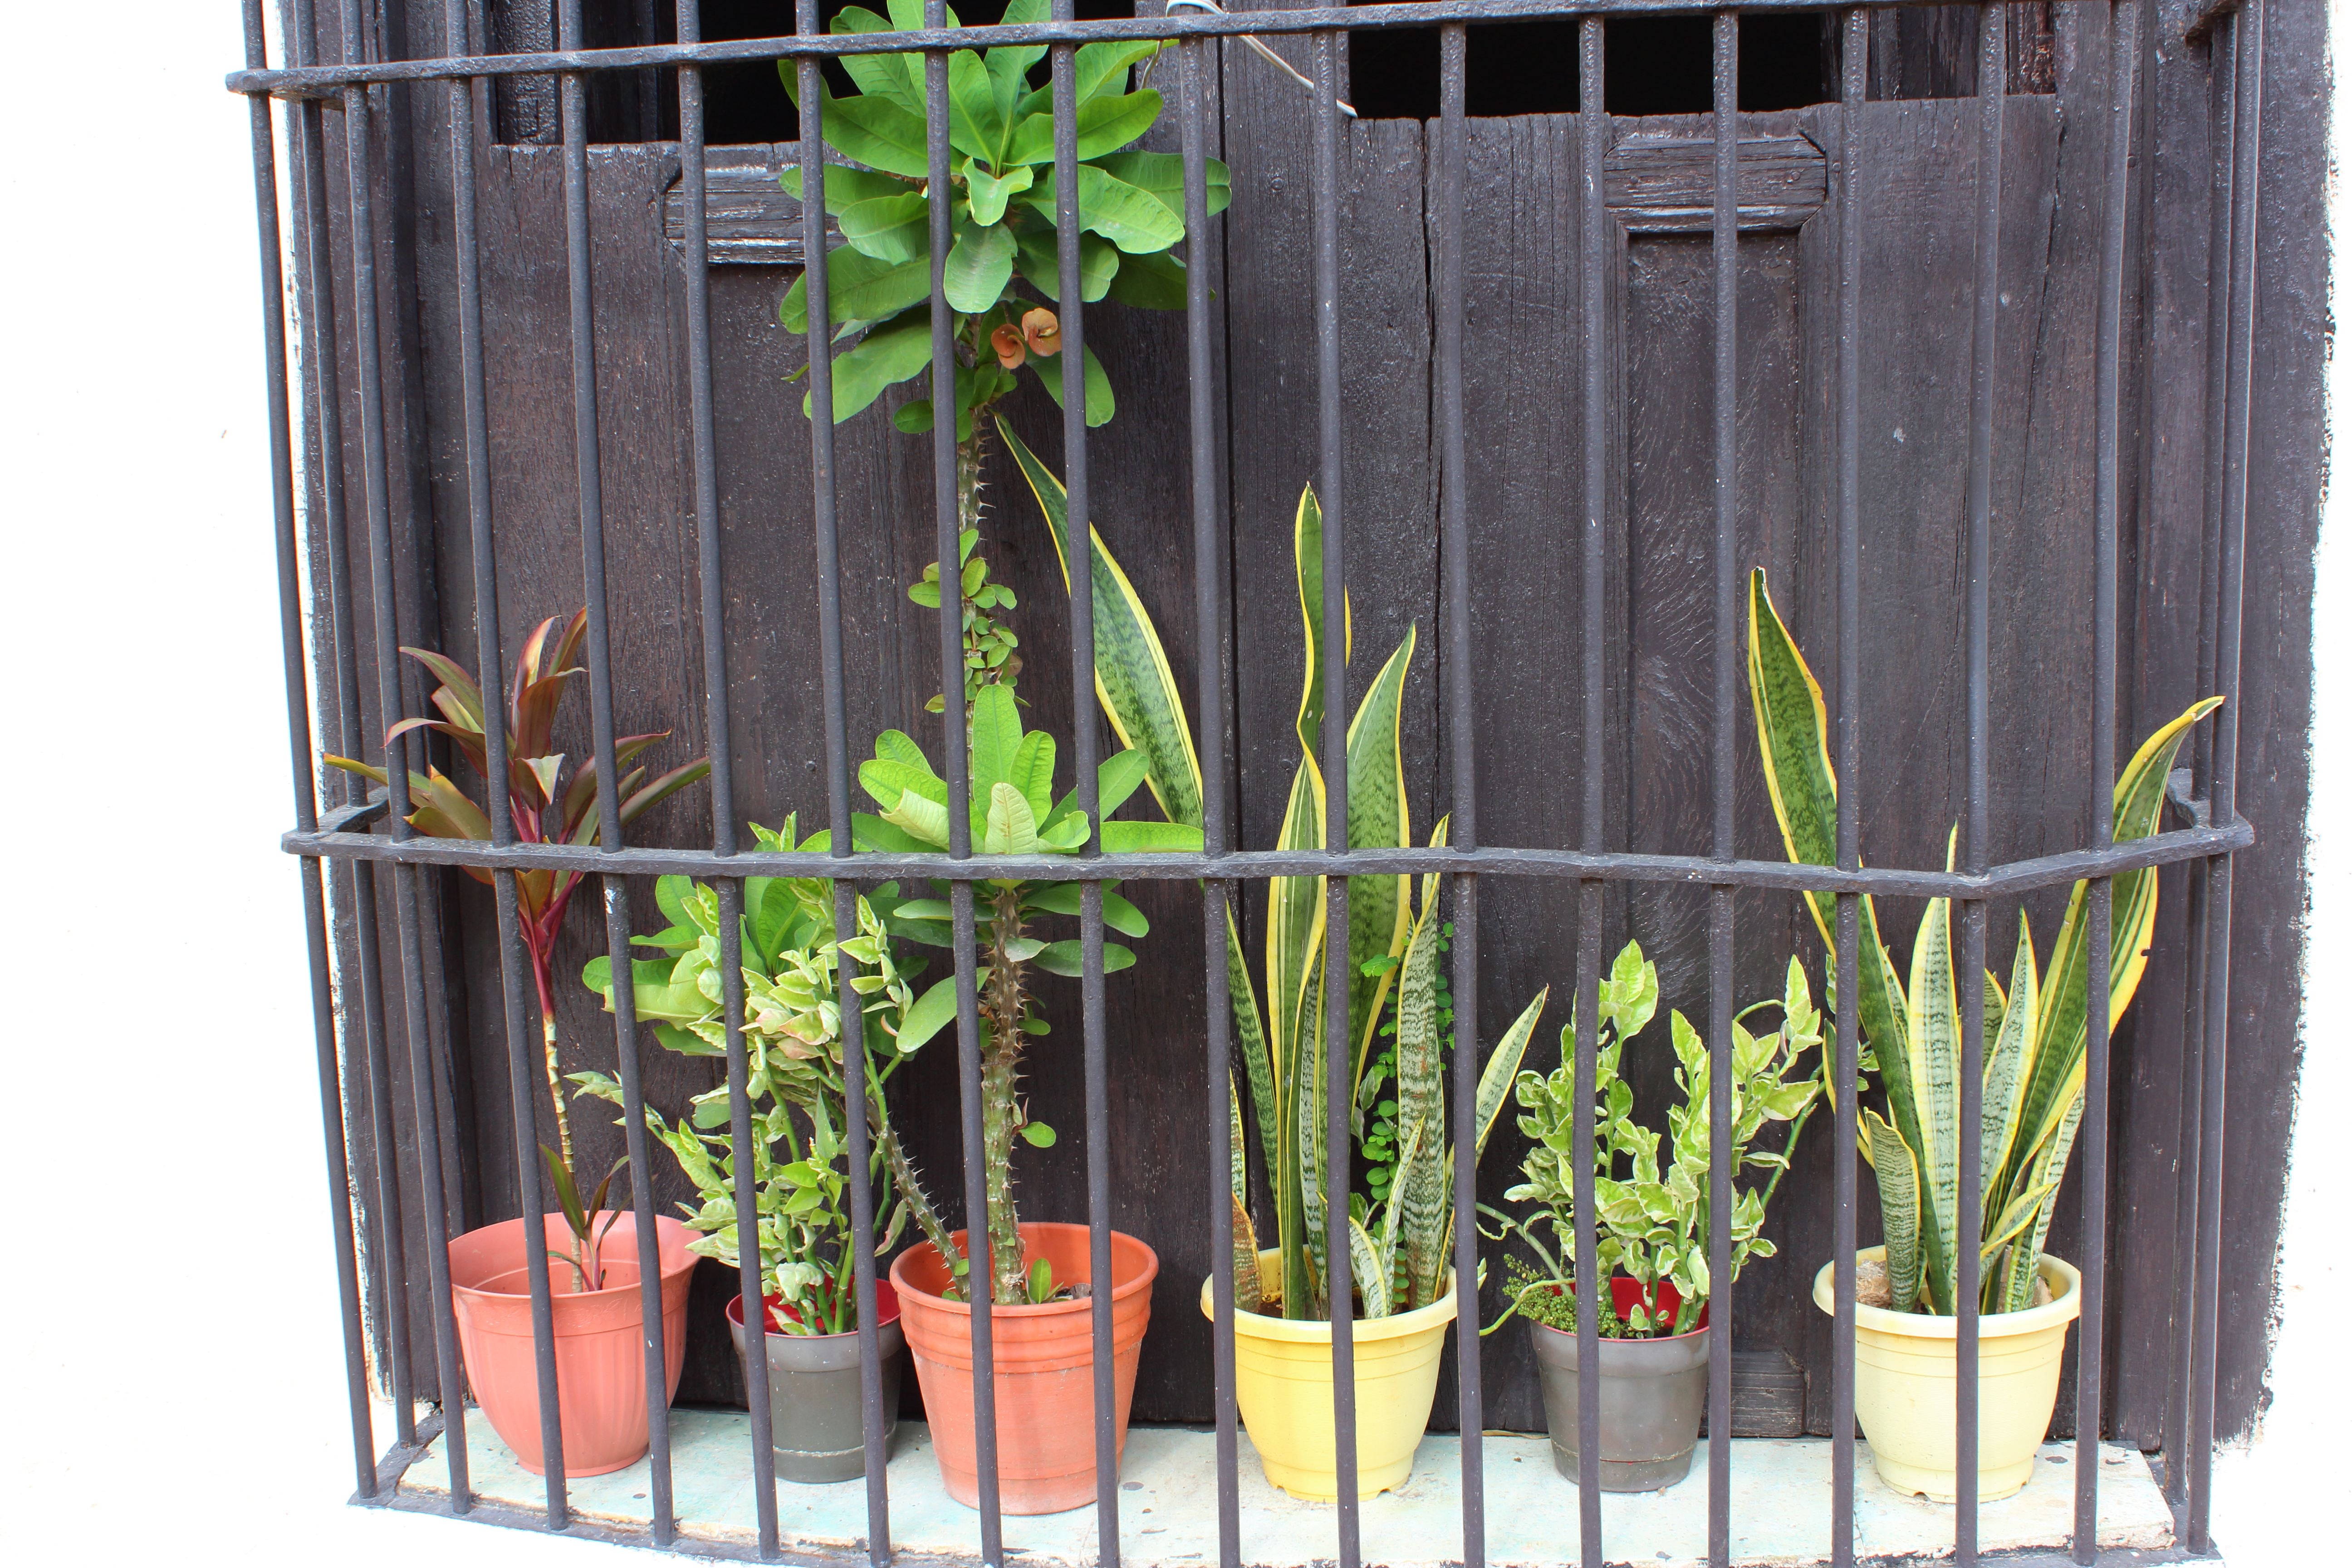 yucatan-valladolid-plants